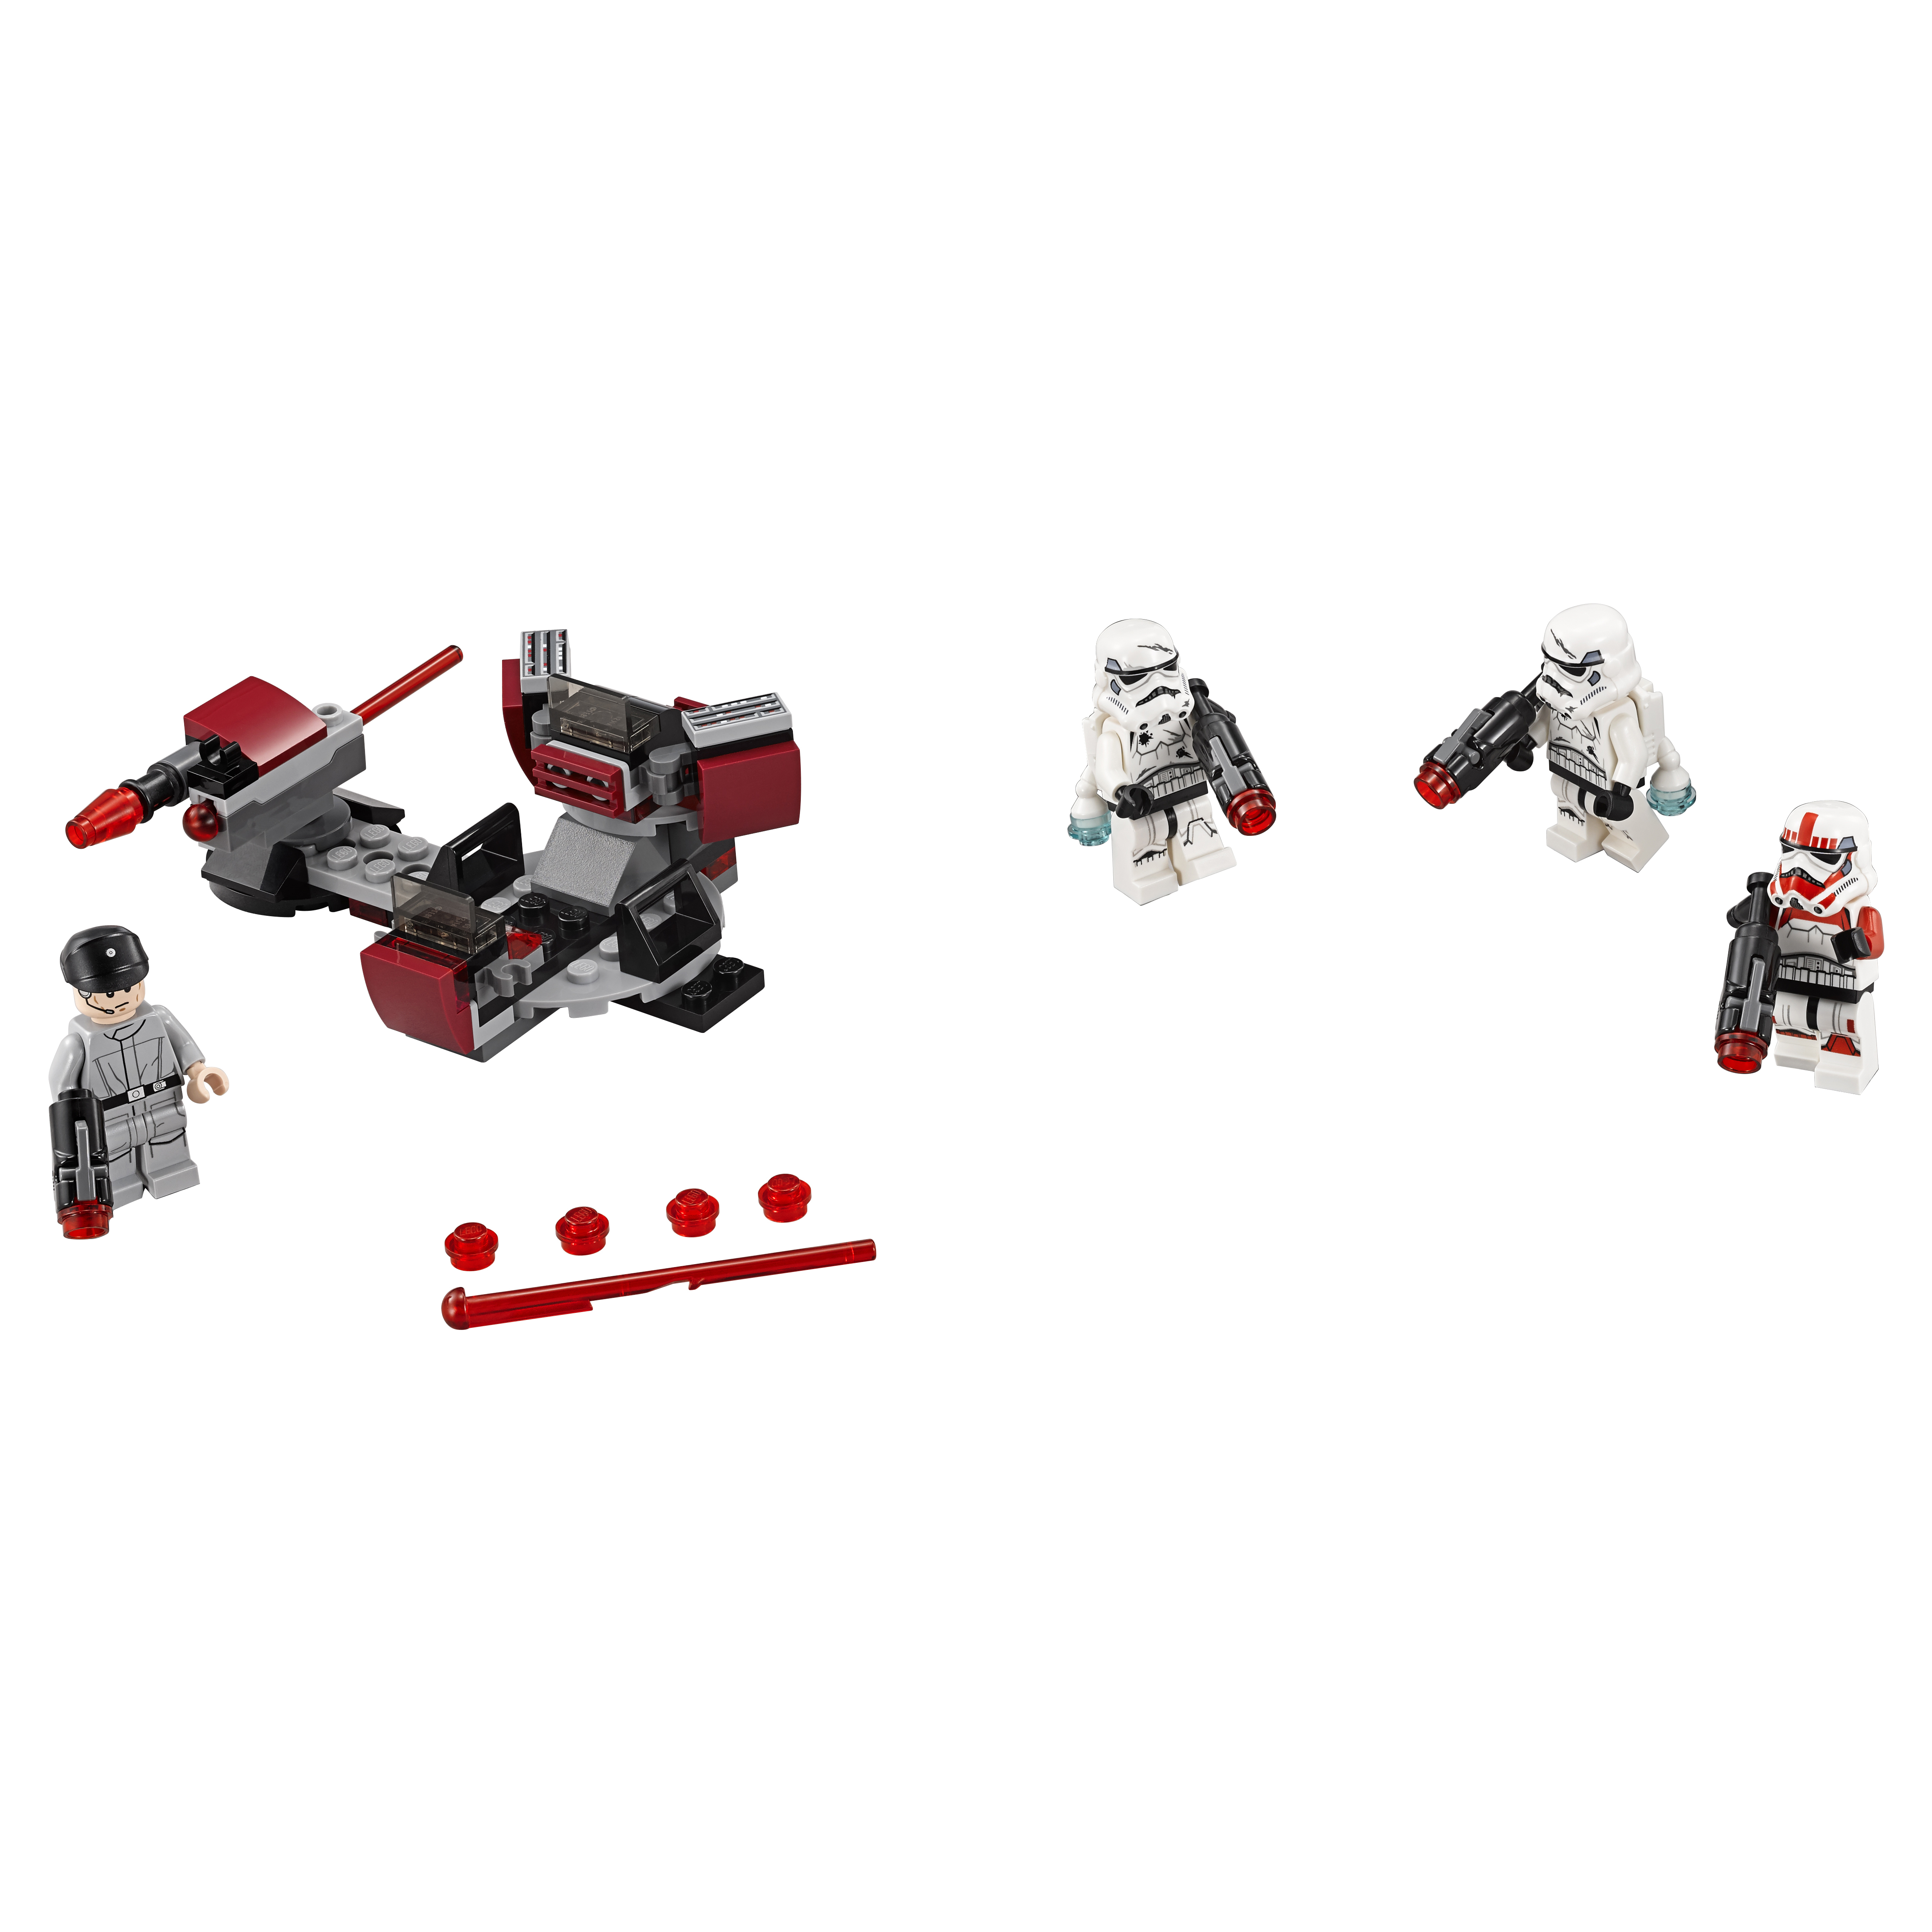 Конструктор LEGO Star Wars Боевой набор Галактической Империи (75134) конструктор lego star wars битва планете такодана 75139